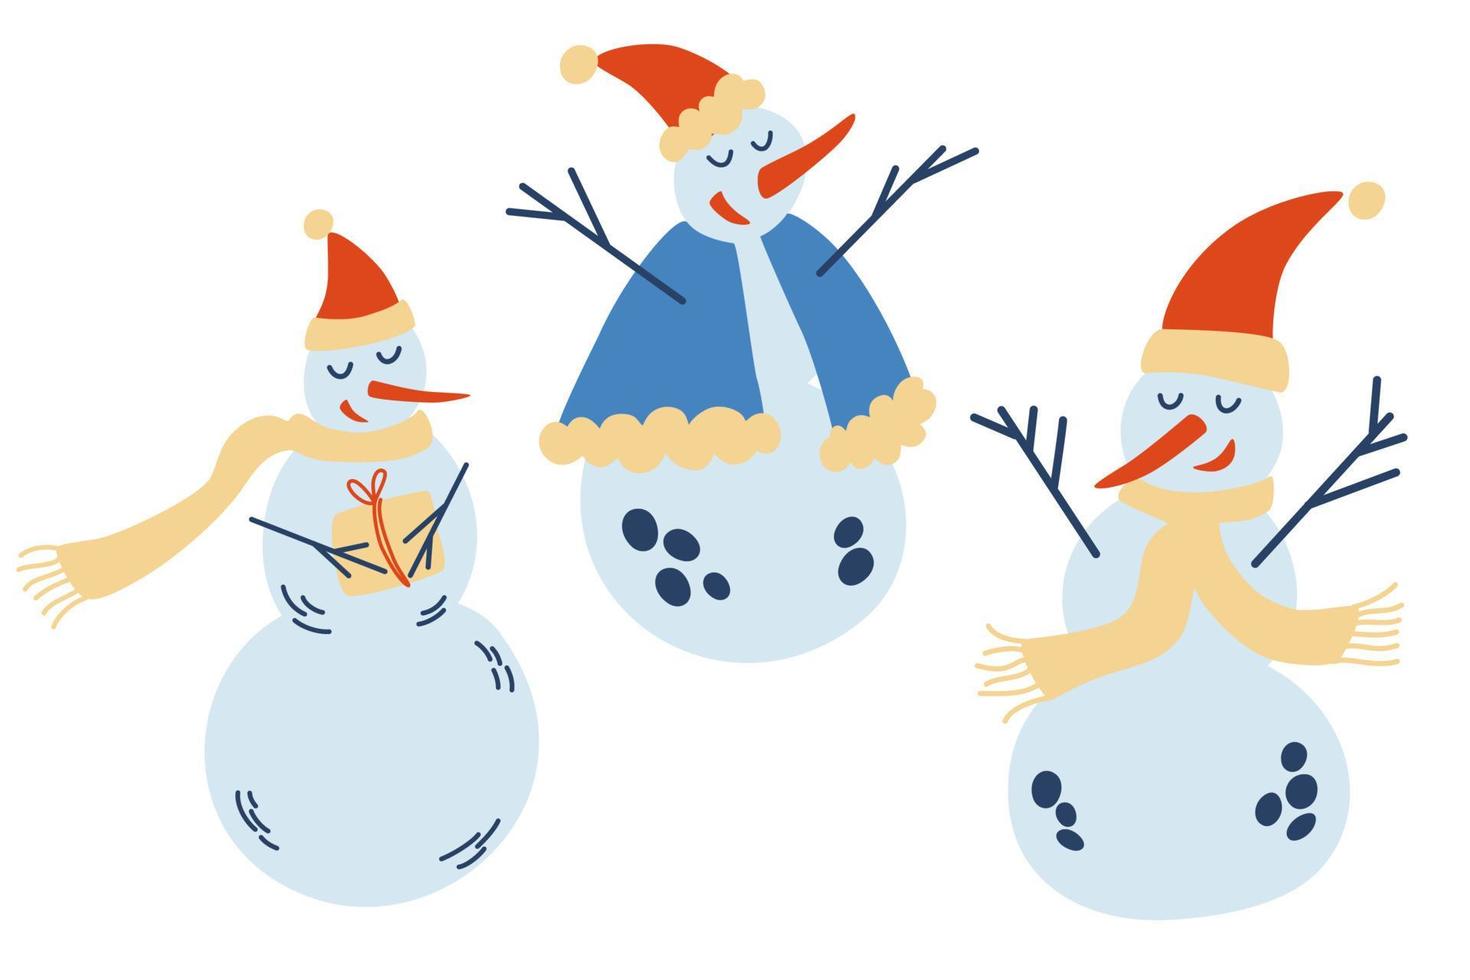 simpatica collezione di pupazzi di neve di natale. pupazzi di neve divertenti in diverse pose cappelli e sciarpe. modello di capodanno per il design su un tema natalizio. illustrazione di inverno di vettore. vettore